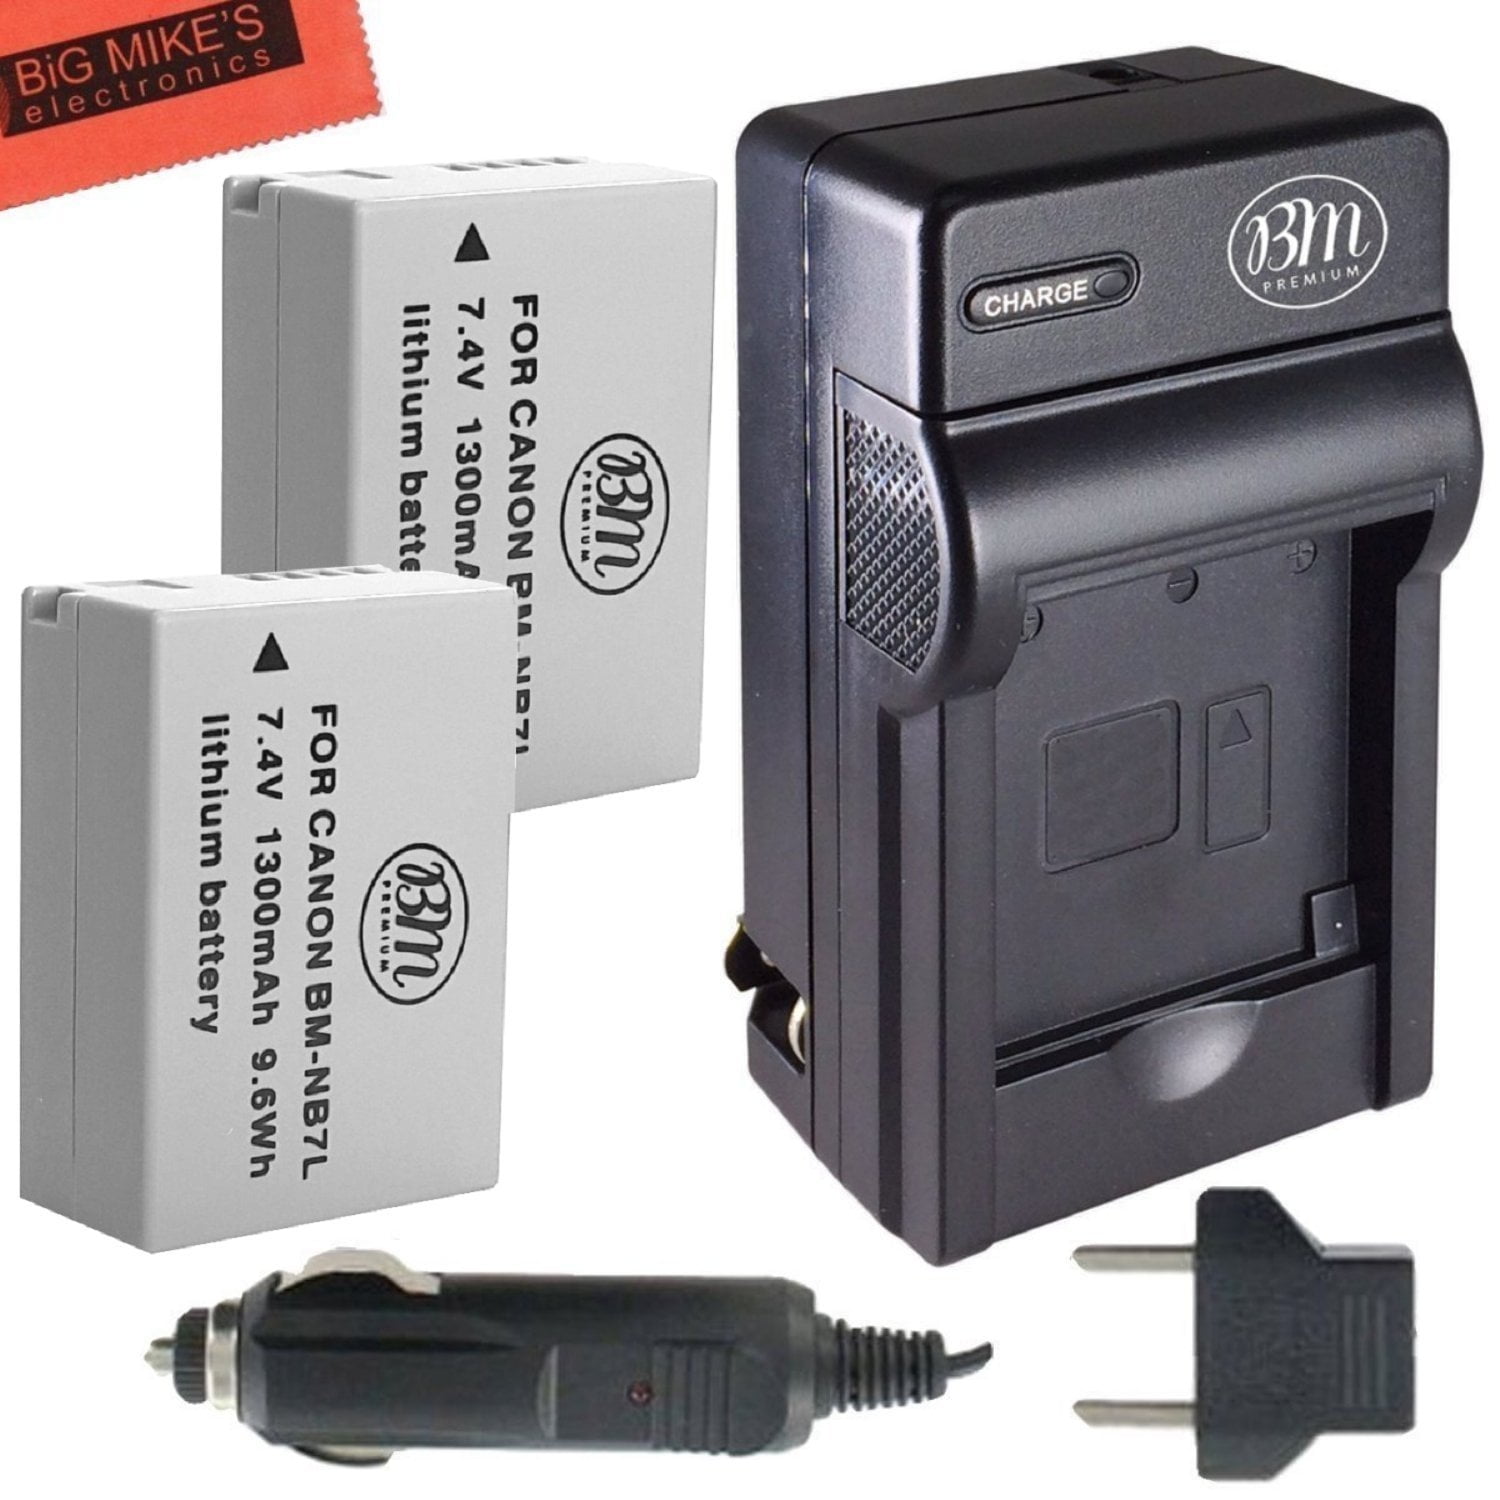 SX30IS e Portable Micro USB Caricatore kit per Canon Powershot SX30 IS G10 G12 CB-2LZ NB7L confezione da 2 Newmowa NB-7L Batteria G11